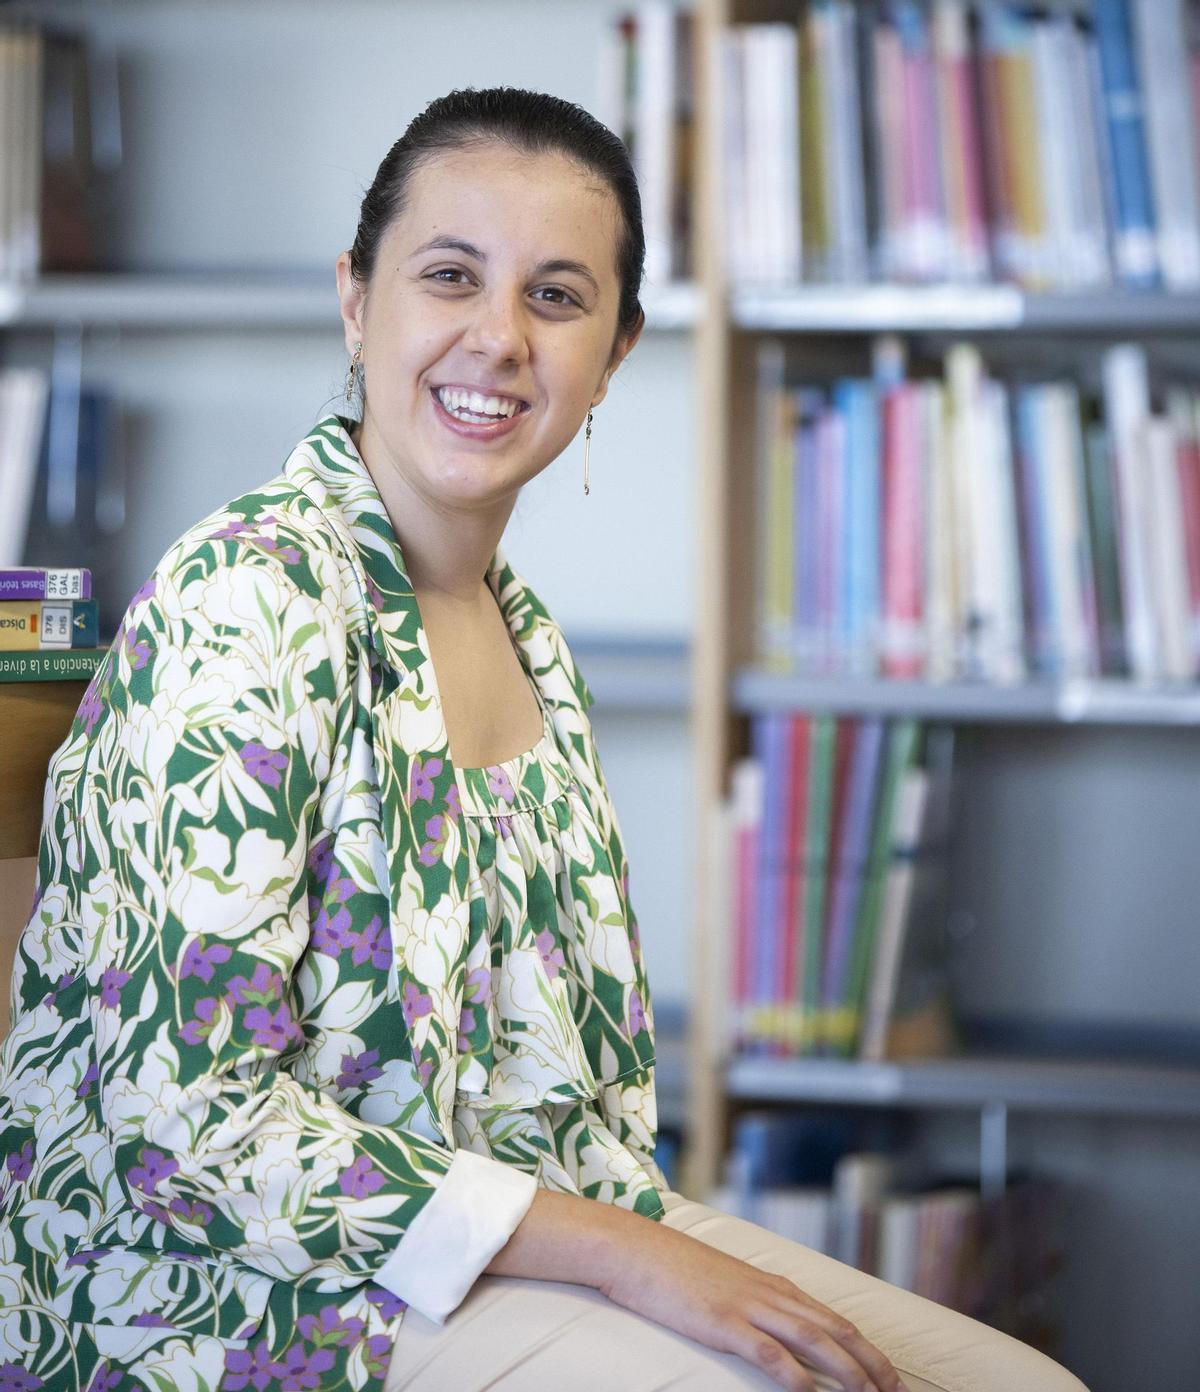 Carla Safont estudia maestro de Primaria en el CEU y quiere especializarse en Psicopedagogía